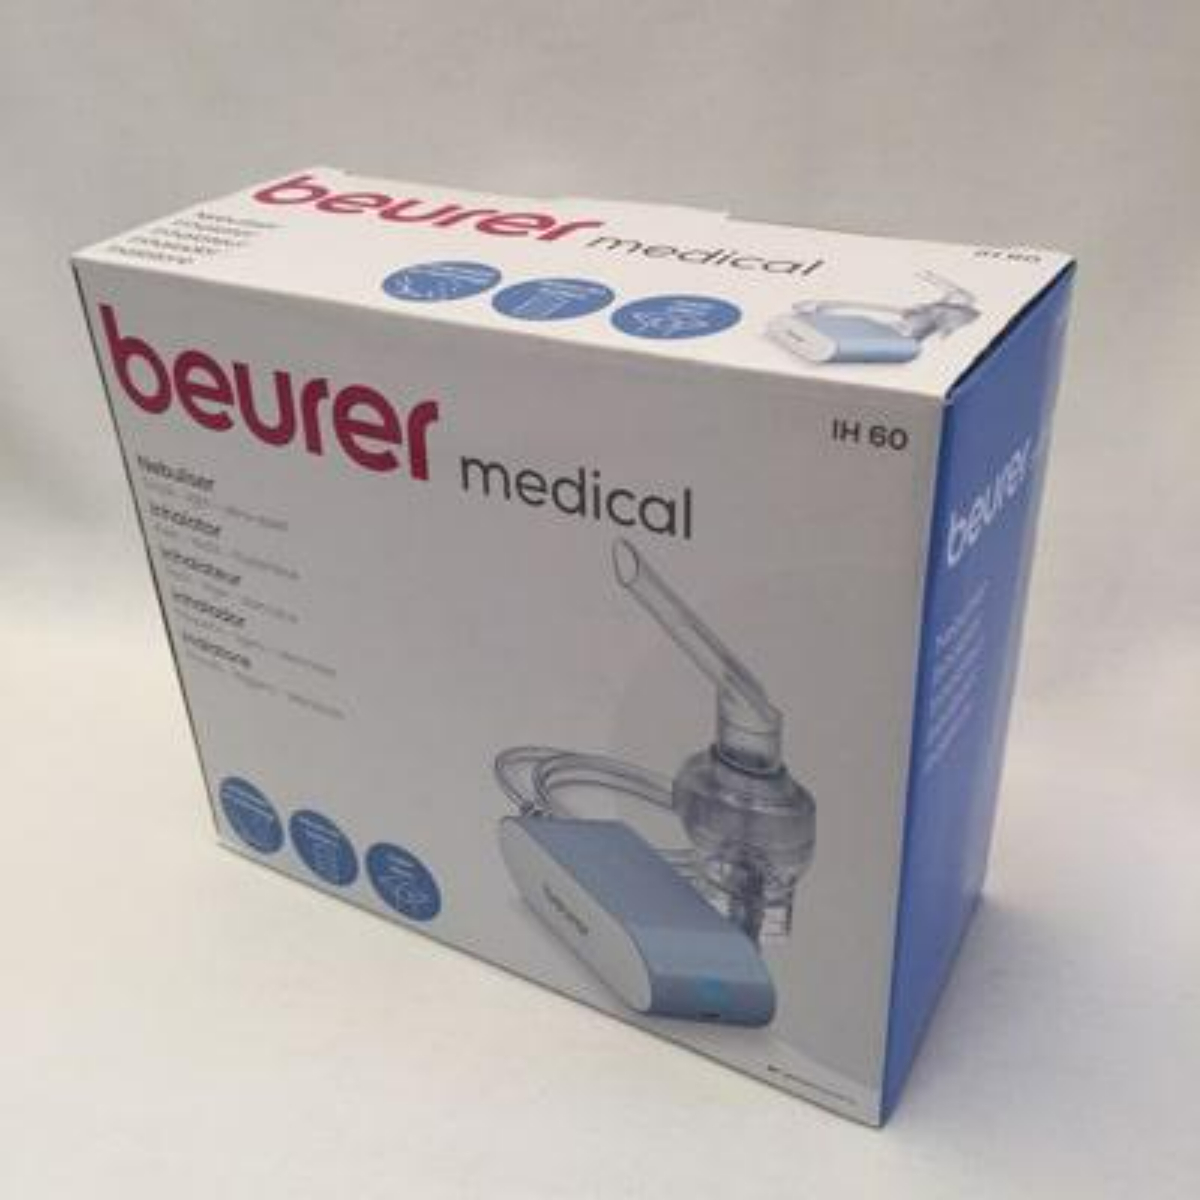 بيورير جهاز بخار نيبوليزر، أزرق، IH 60